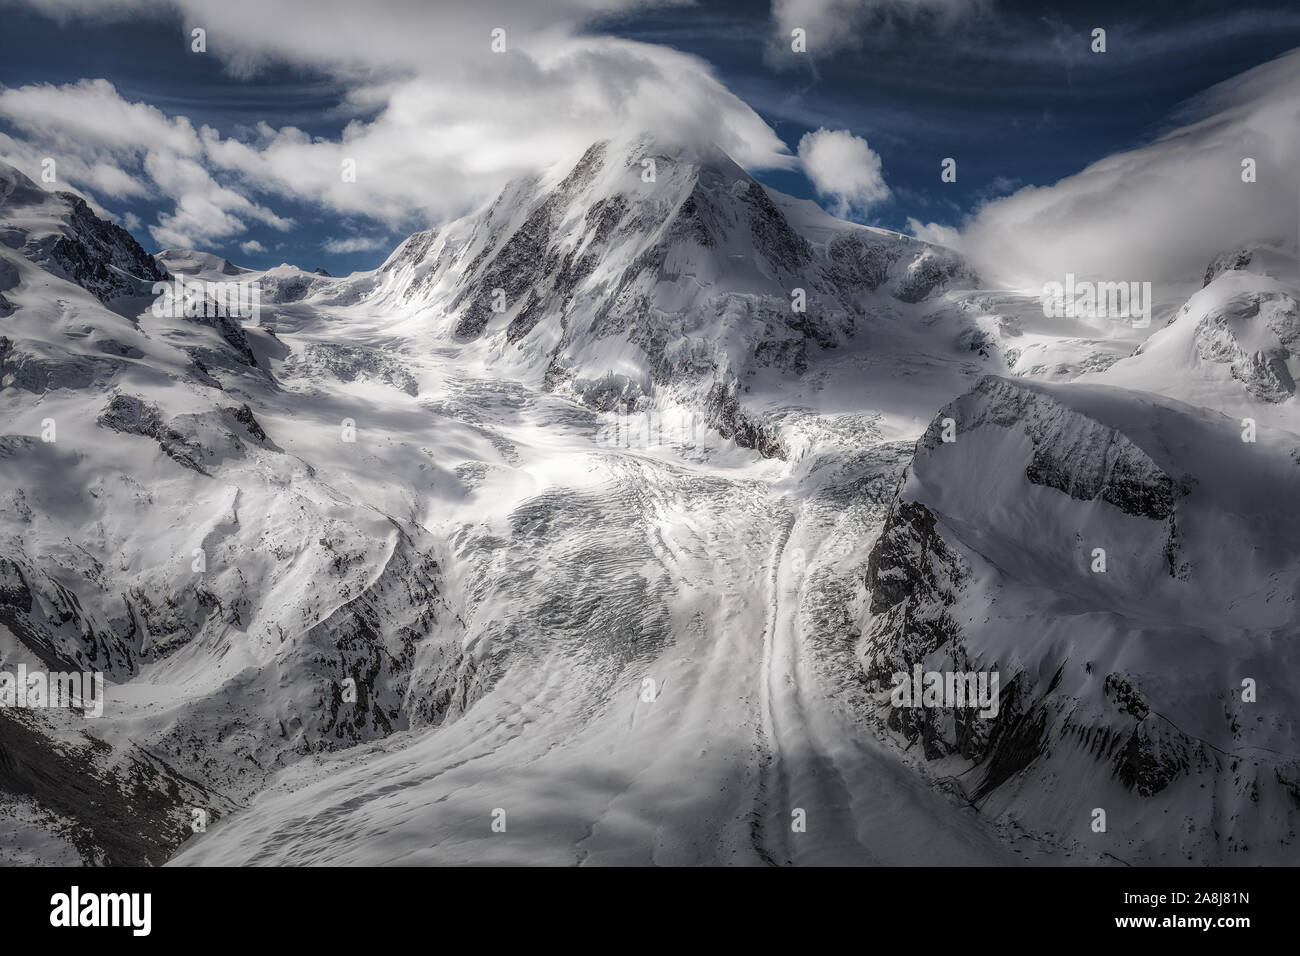 Gorner ghiacciaio in Alpi Pennine, Svizzera. Gornergrat, vicino al Cervino anche chiamato il Cervino. Profondo cielo blu e nuvole. Foto Stock